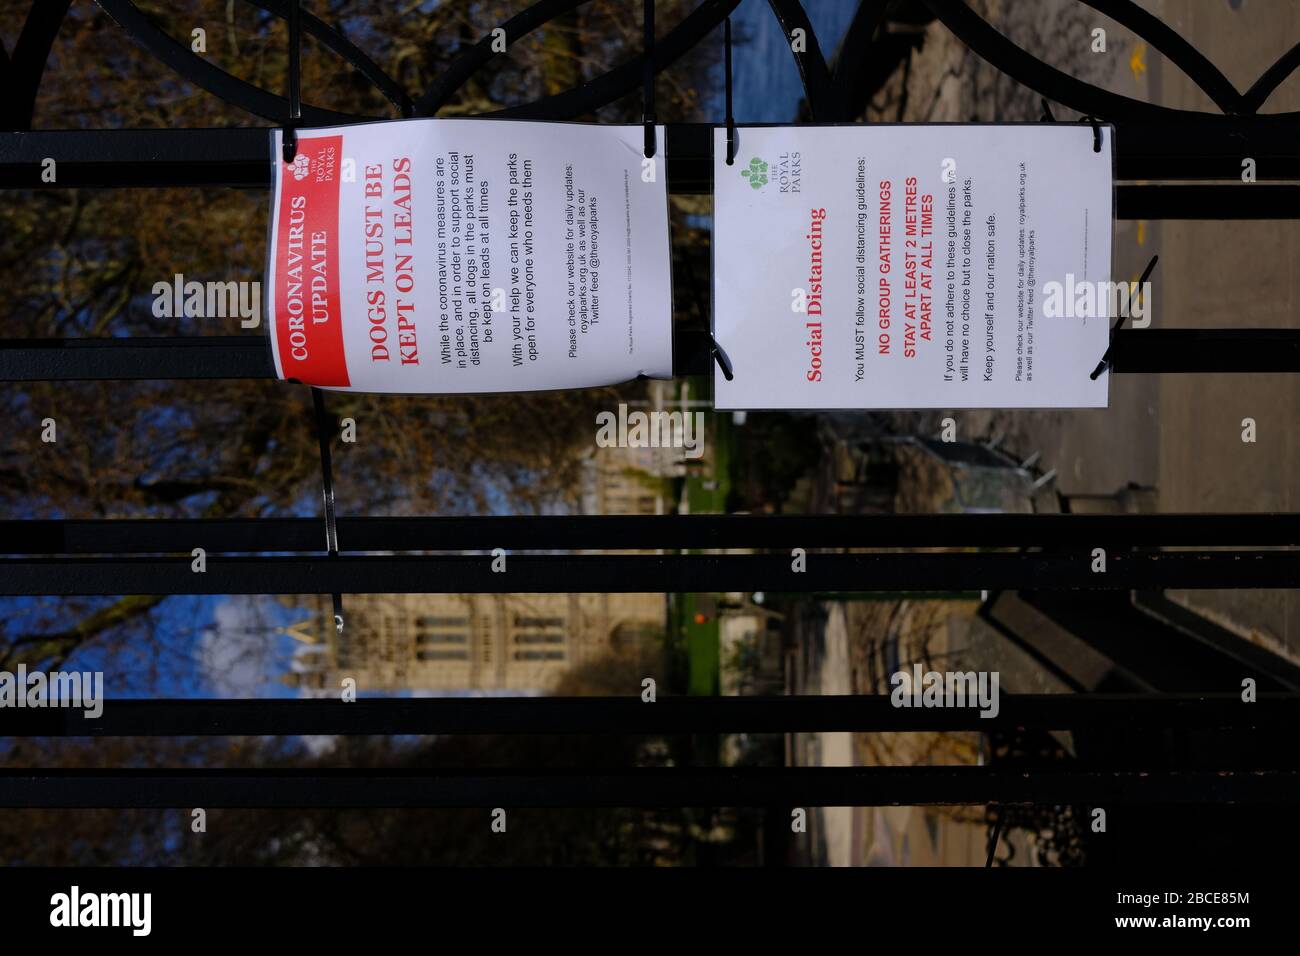 Londres, Reino Unido. 4 de abril de 2020. Señales aparecen en los parques de Londres mostrando reglas de distanciamiento social crédito: Rachel Megawhat/Alamy Live News Foto de stock